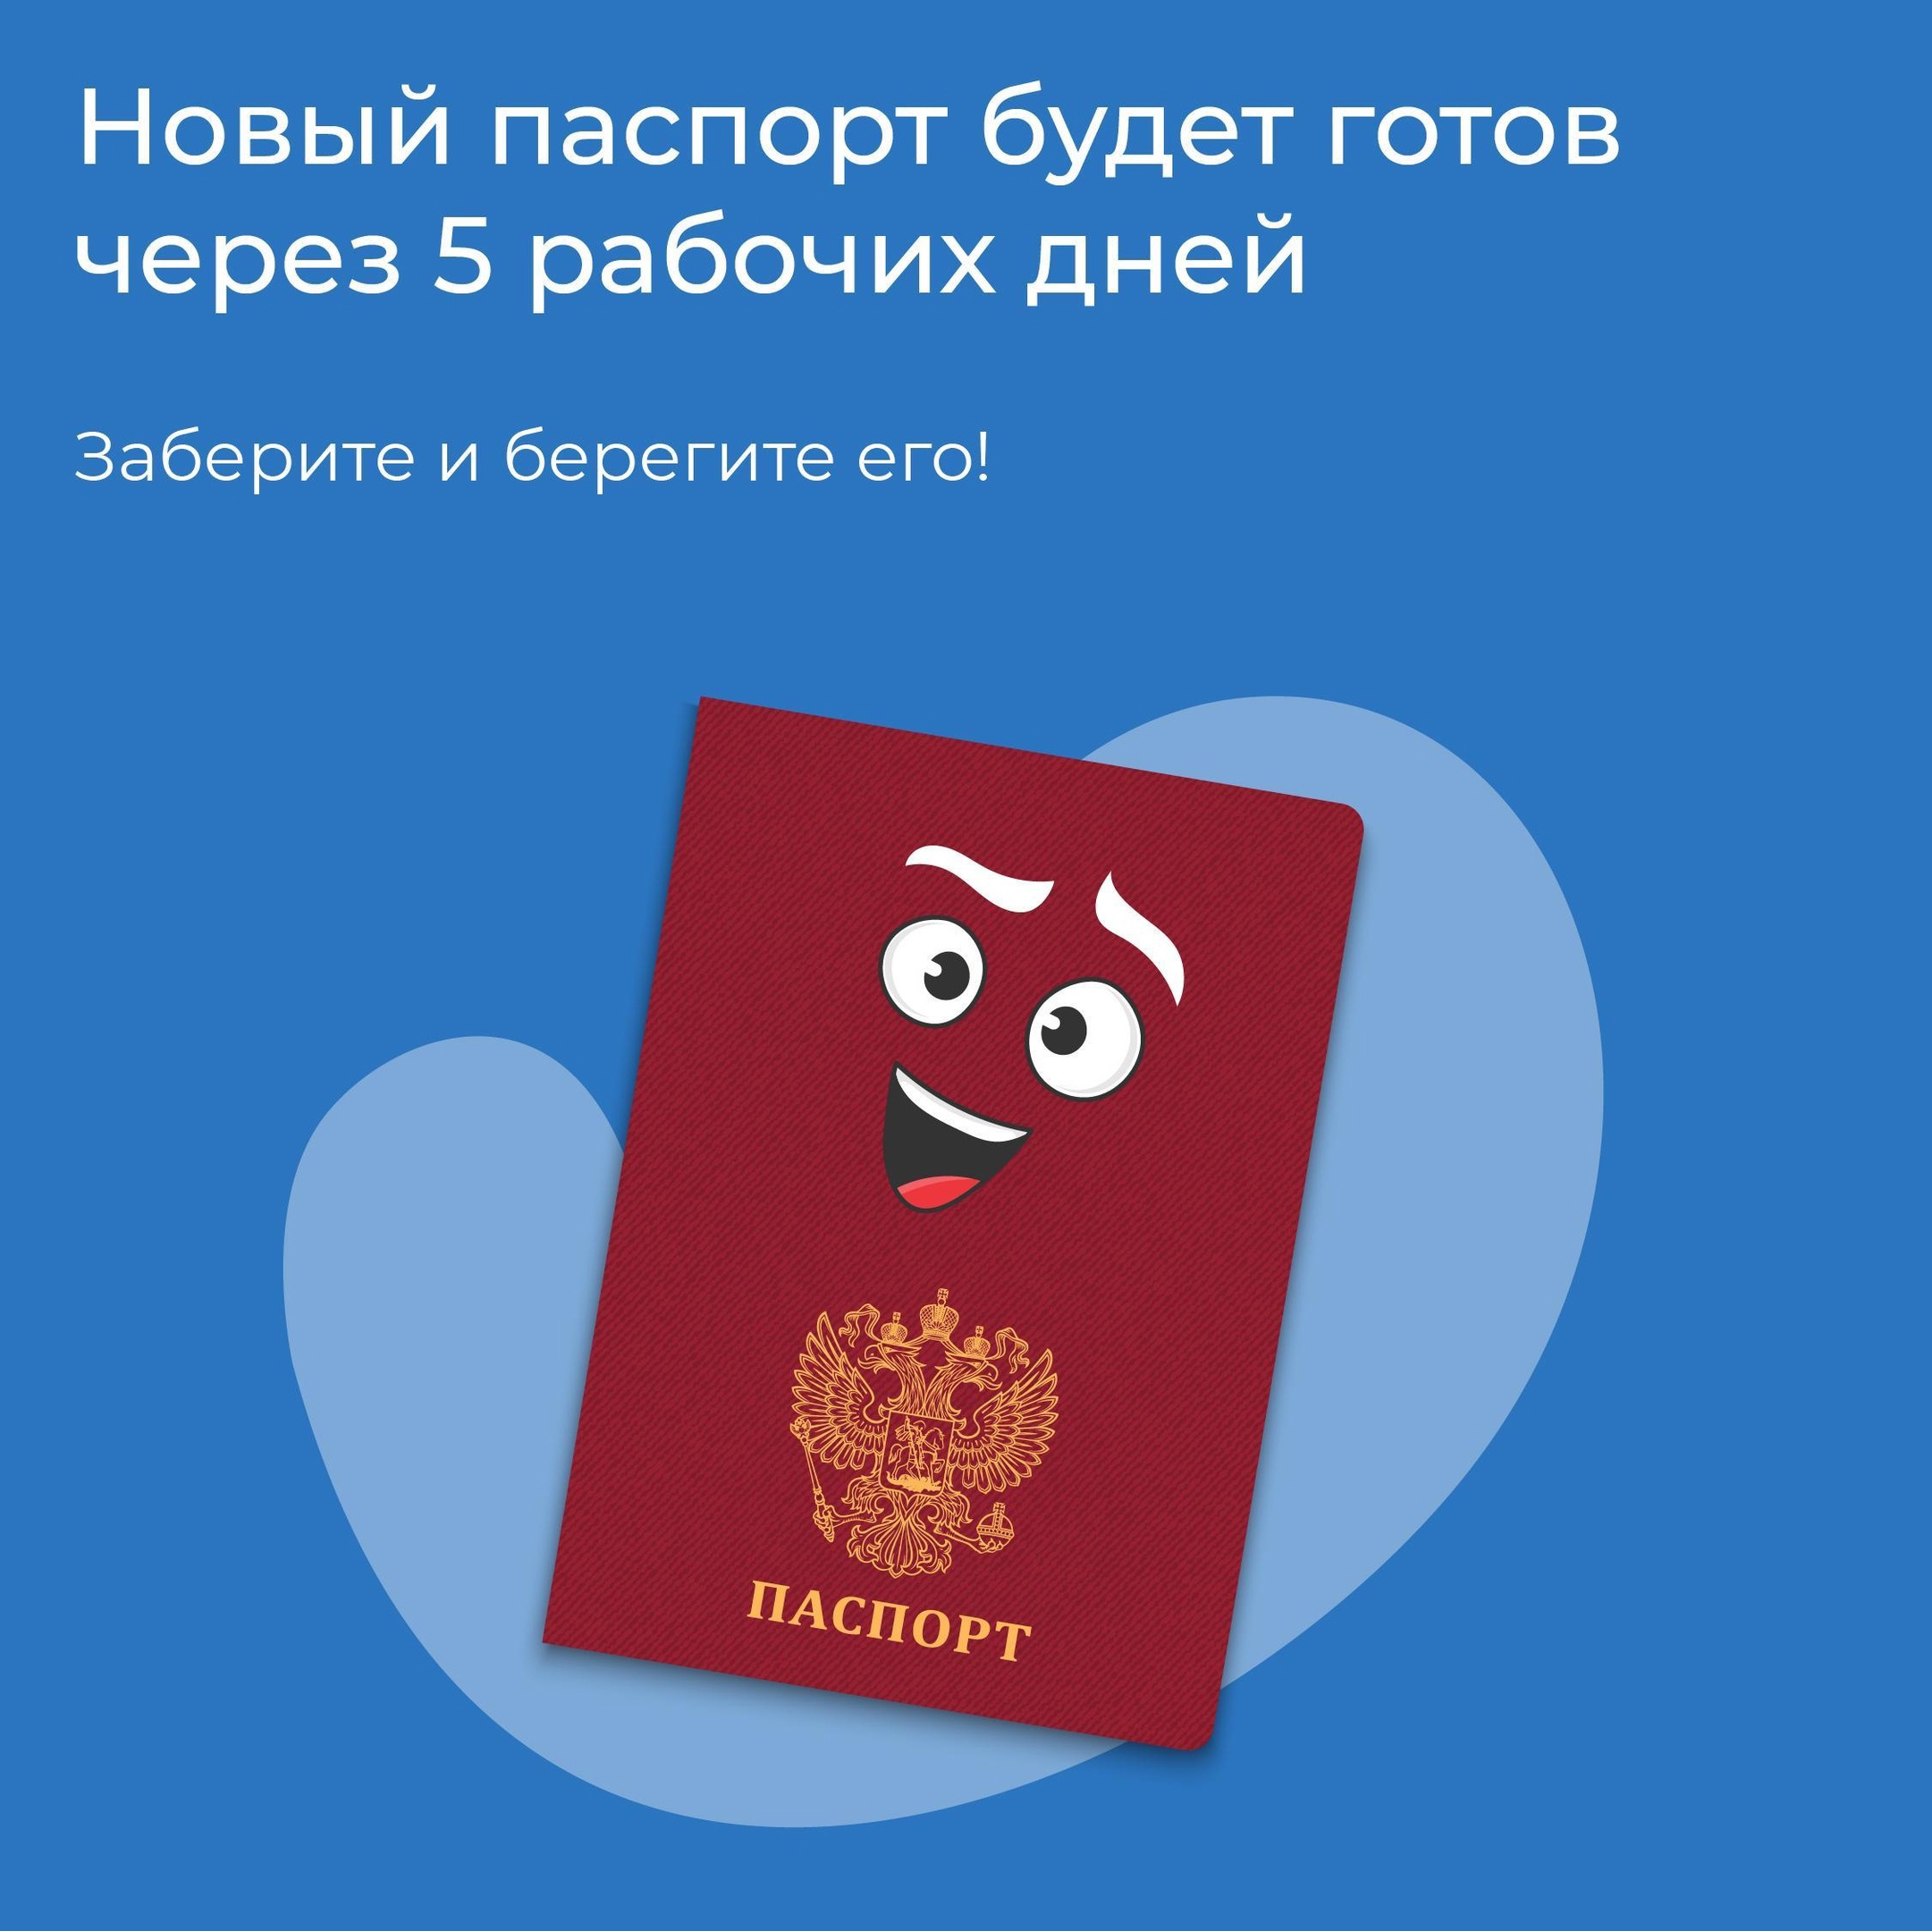 Потеря или кража паспорта